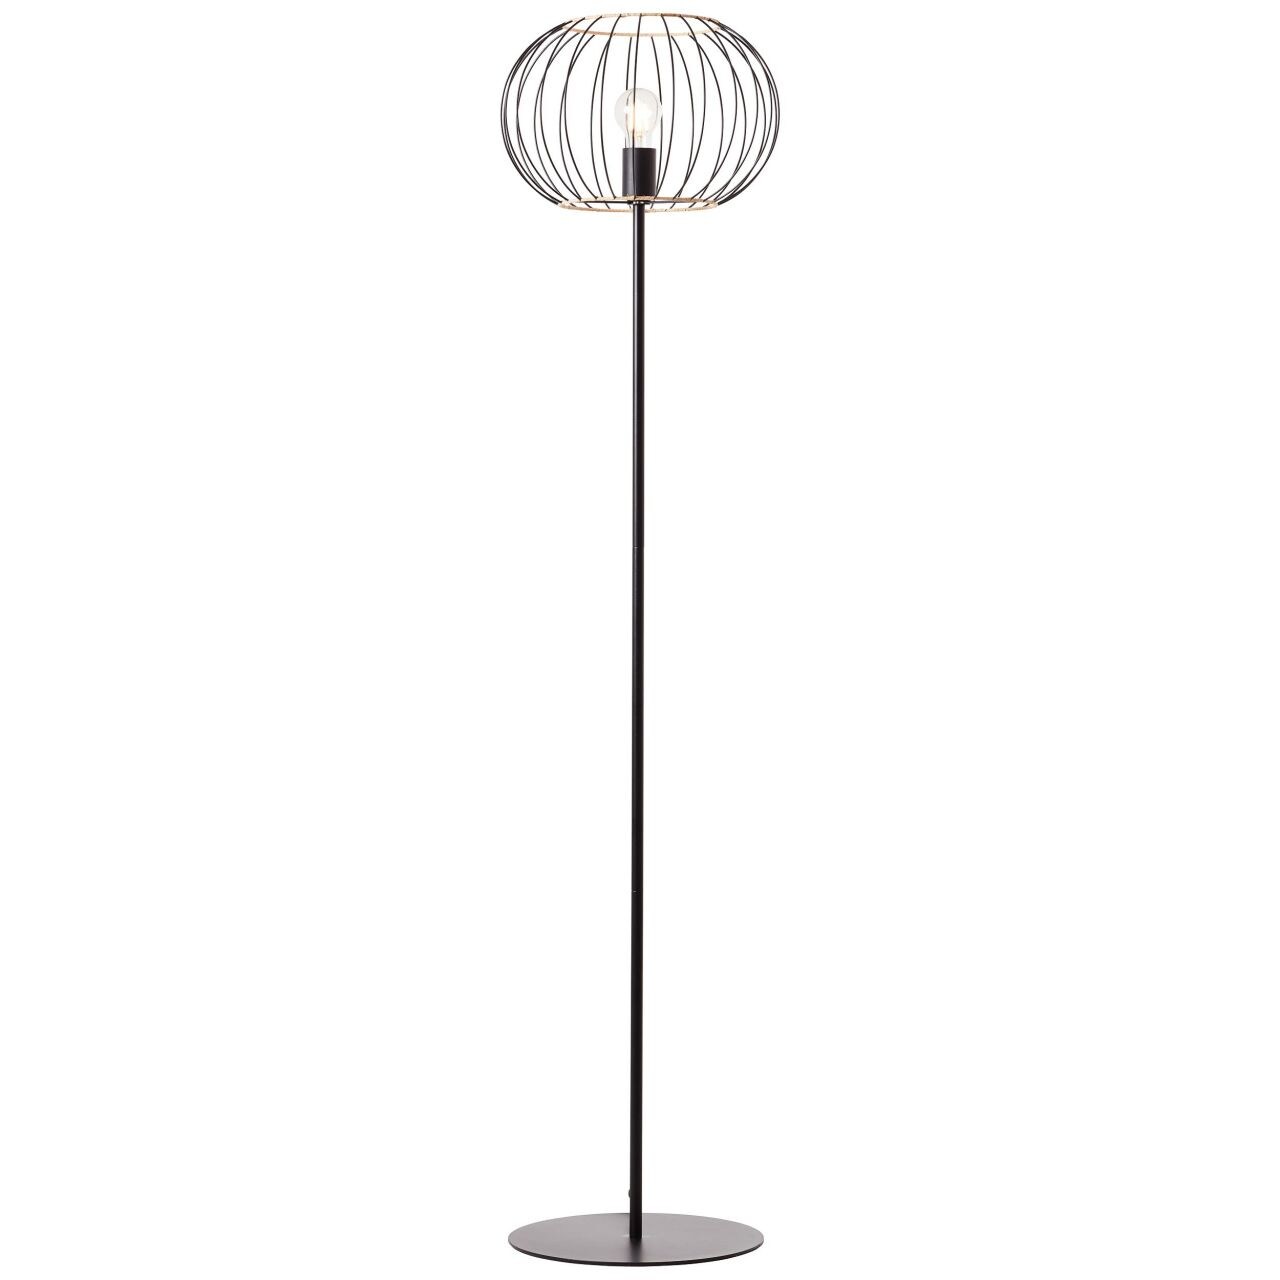 BRILLIANT Lampe, Silemia Standleuchte 1flg schwarz matt, 1x A60, E27, 52W, Mit Fußschalter